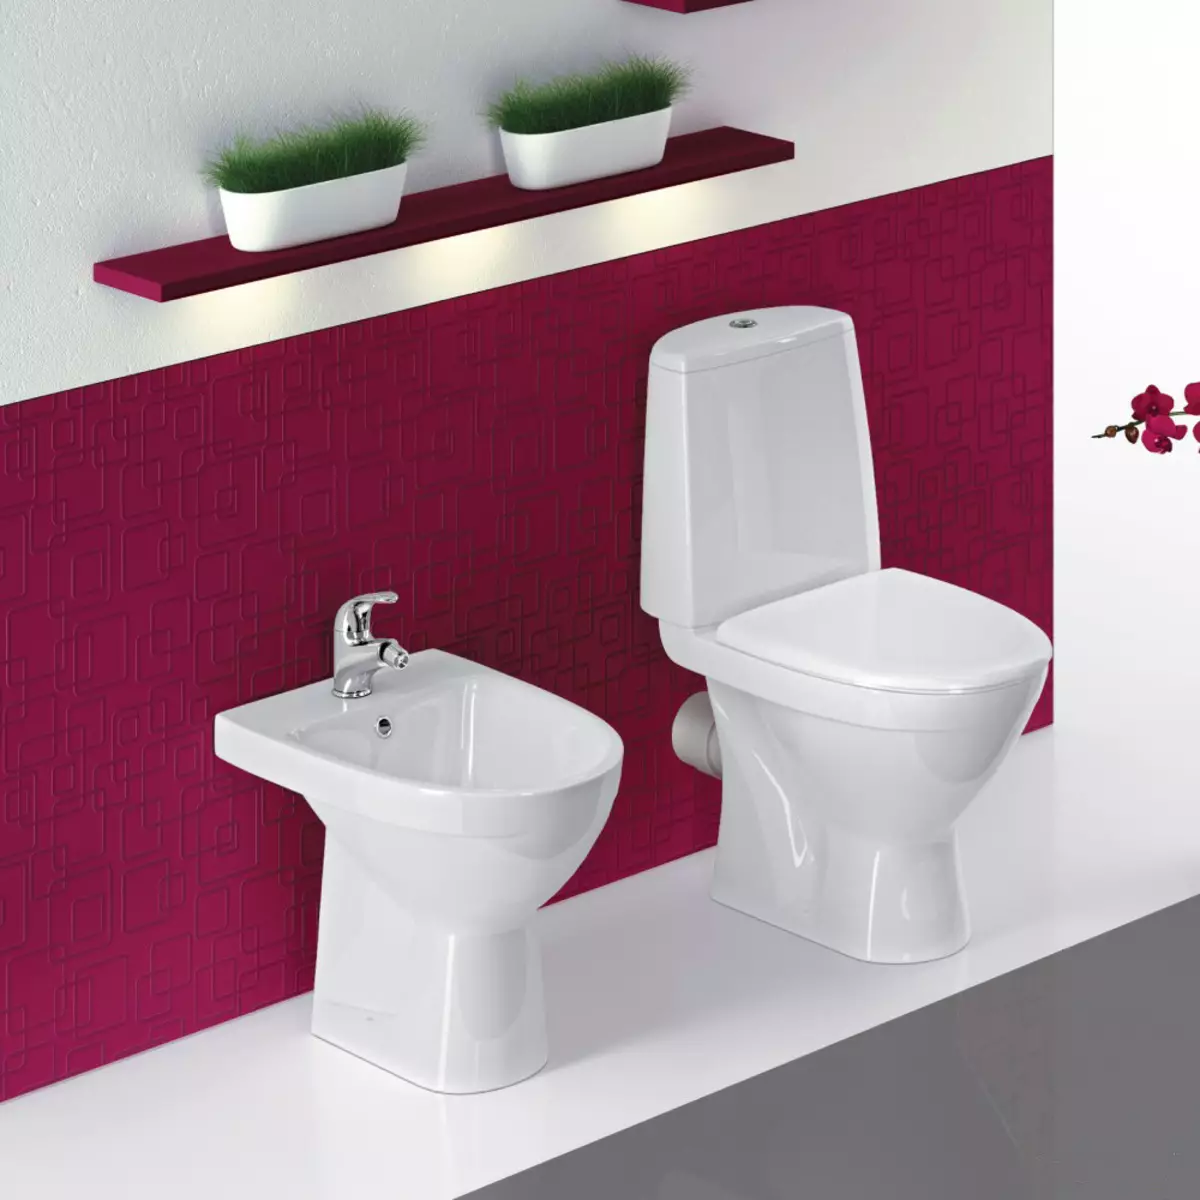 Toilet skål med skrå udgivelse: importeret bærende unitaz-kompakt, udgave hjørne, kabel kompakte toilet og andre modeller med skrå udgivelse 10523_30